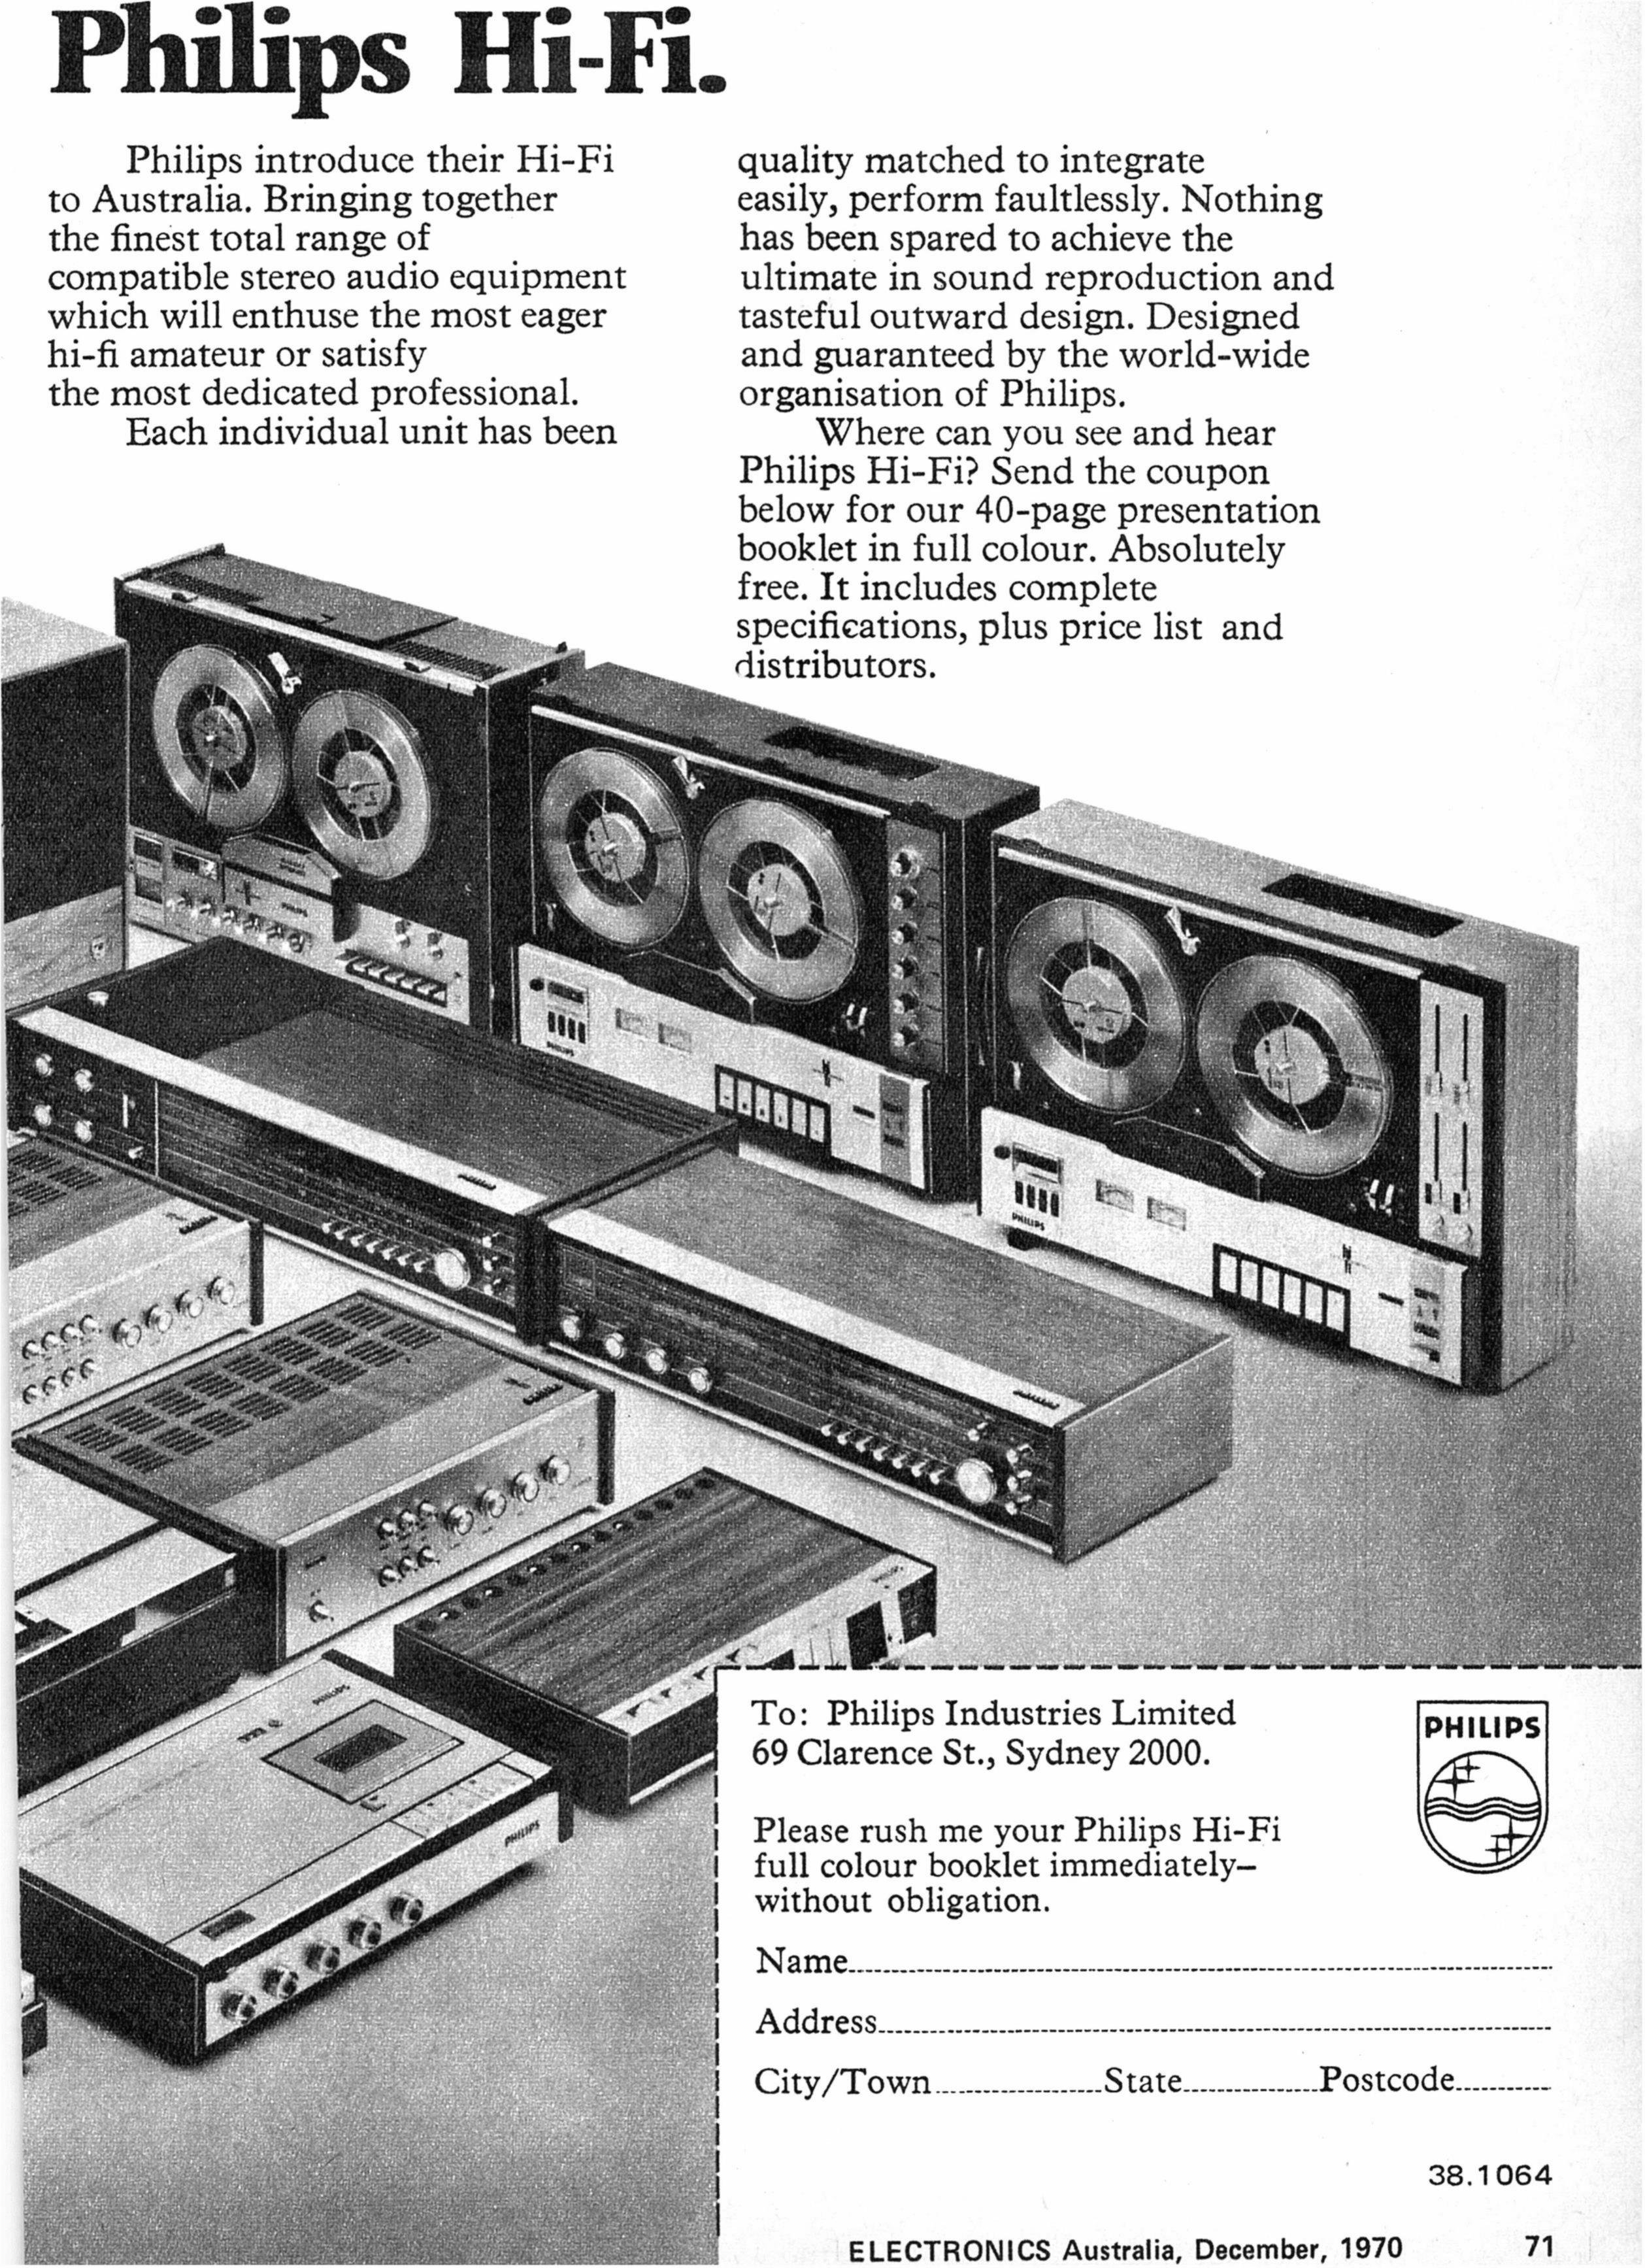 Philips 1970-1-4.jpg